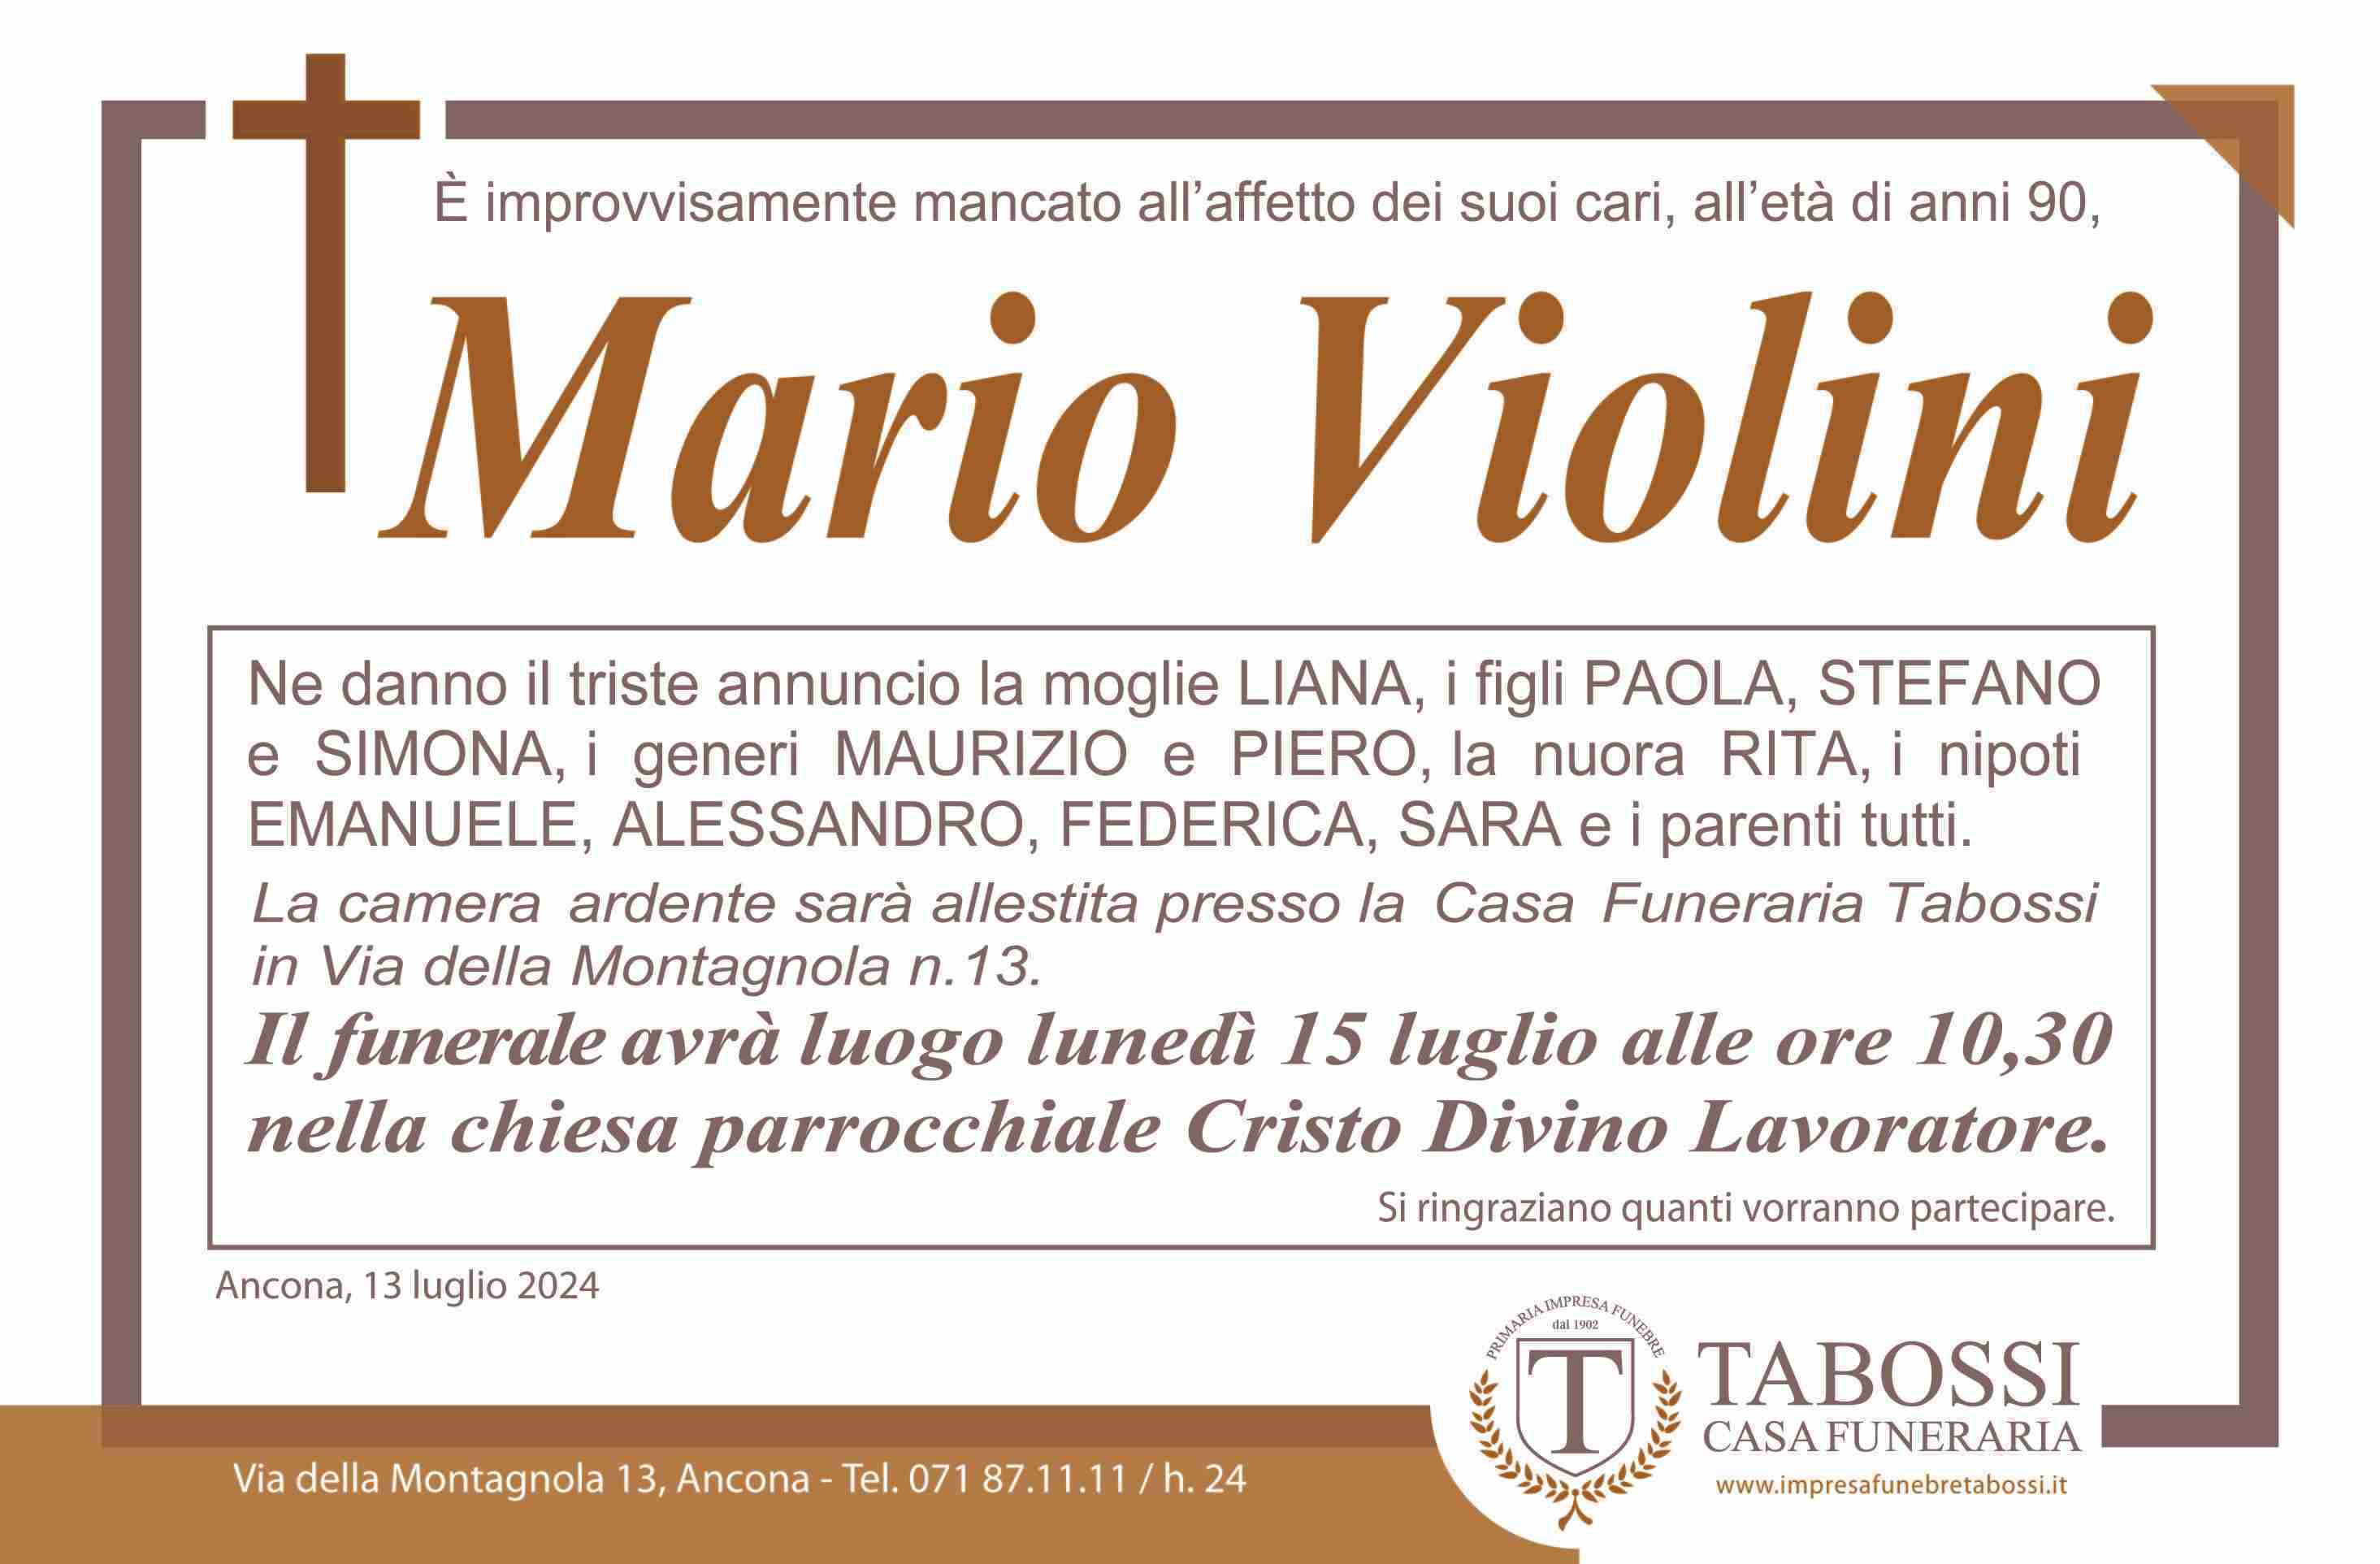 Mario Violini